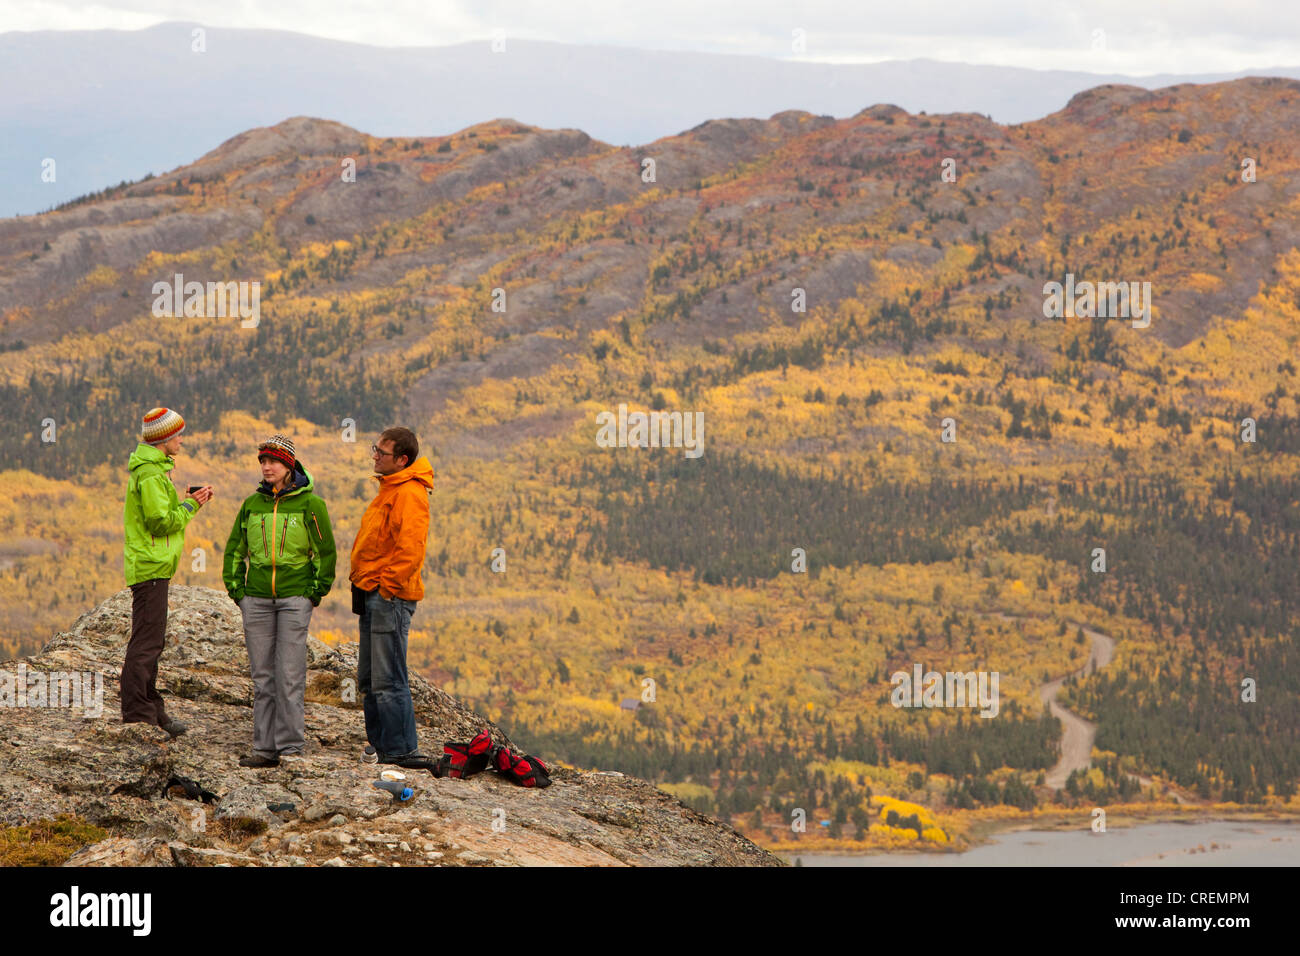 Gruppe von Wanderern, Sub alpine Tundra, Indian Summer, Blätter in Herbstfarben, Herbst, in der Nähe von Fish Lake, Yukon Territorium, Kanada Stockfoto